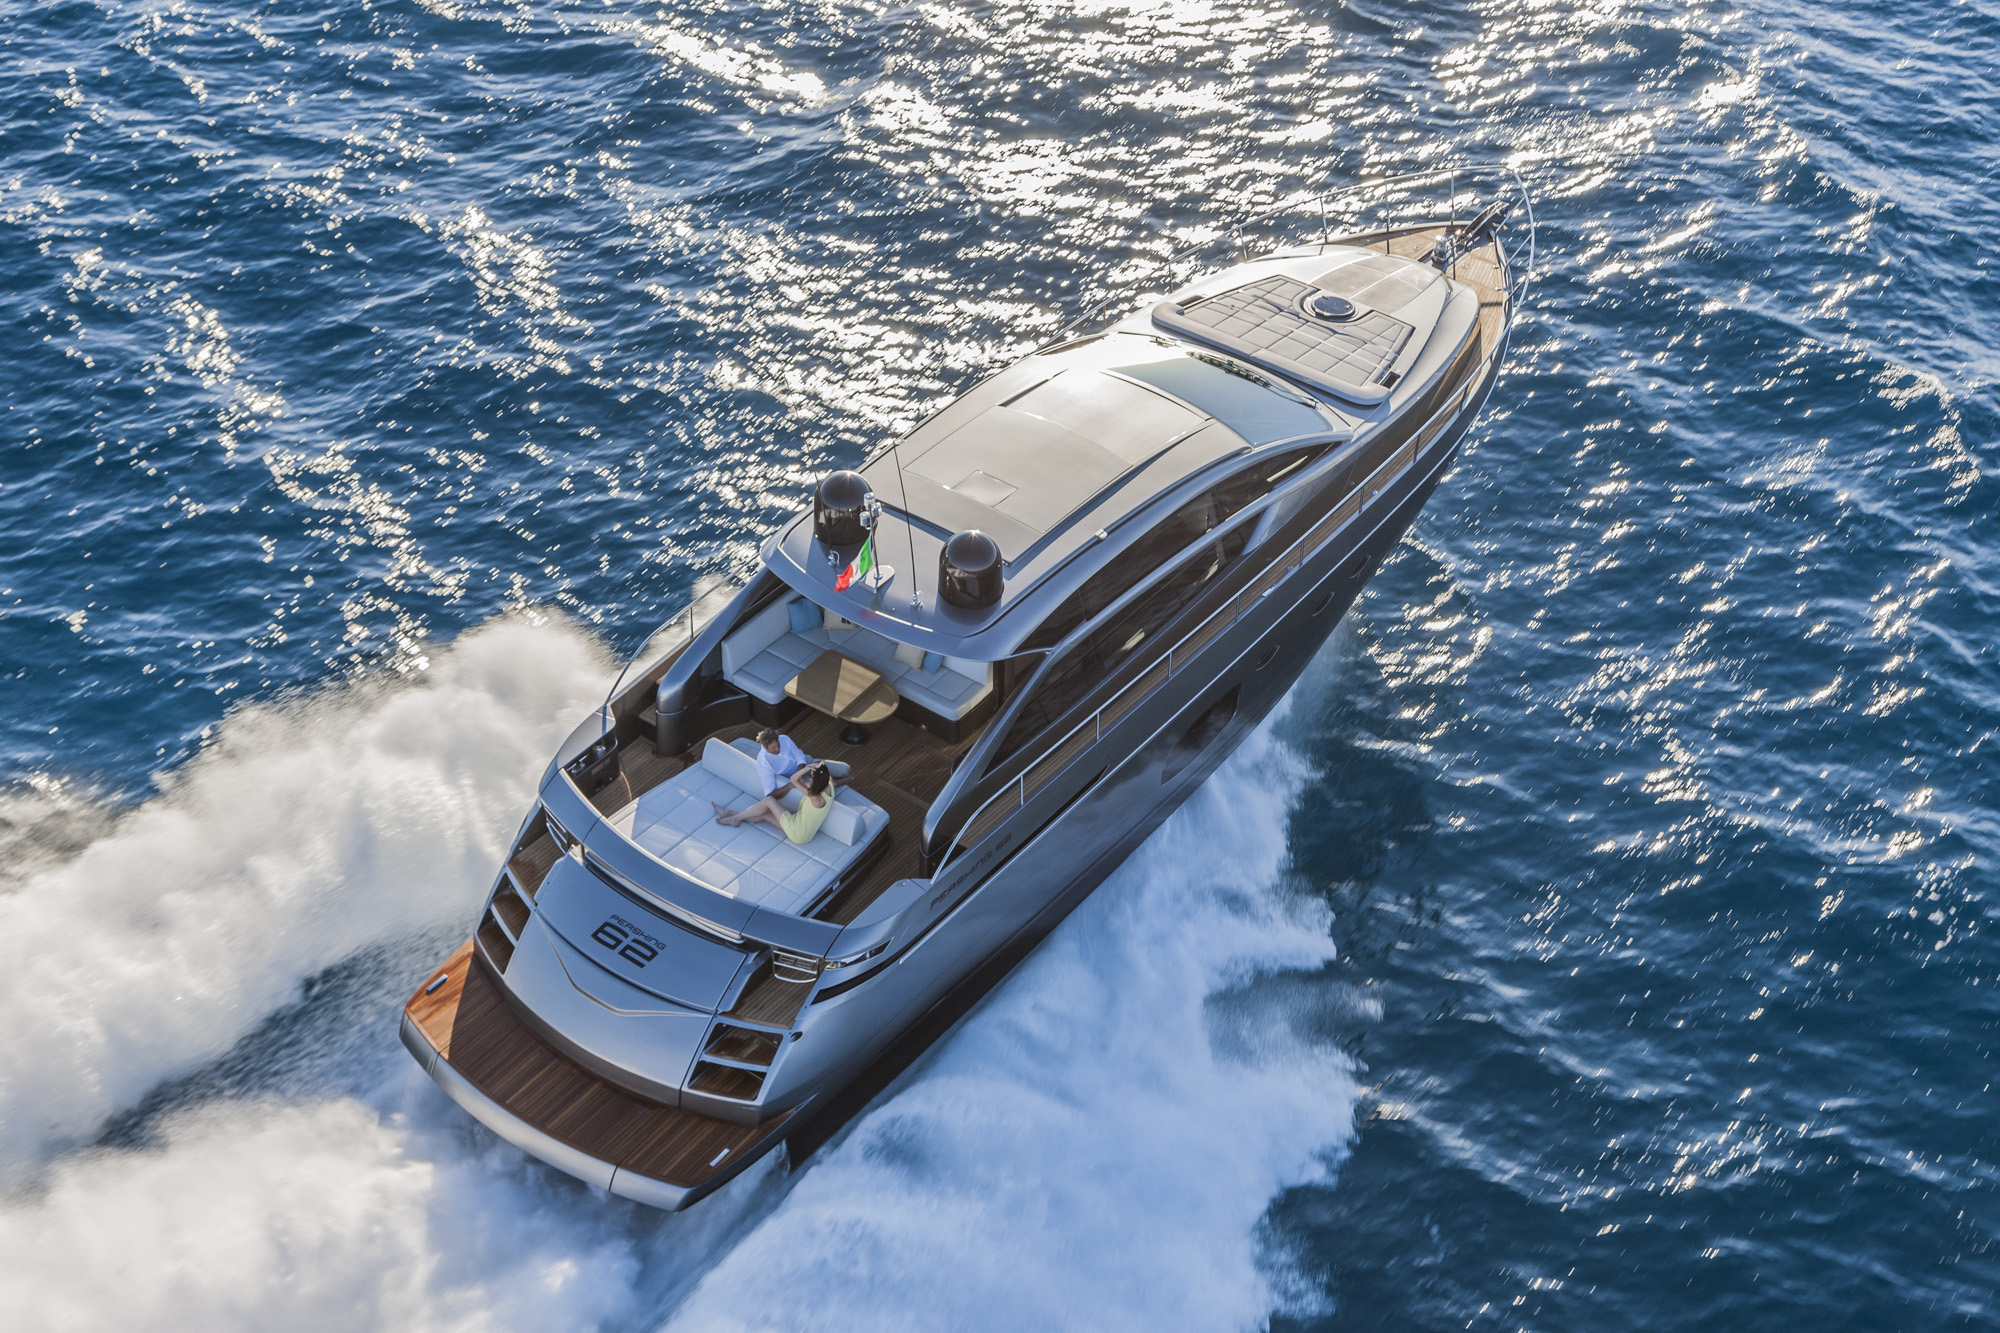 Pershing 62’: intense prestazioni e raffinate scelte estetiche per uno yacht dal carattere sportivo ed elegante